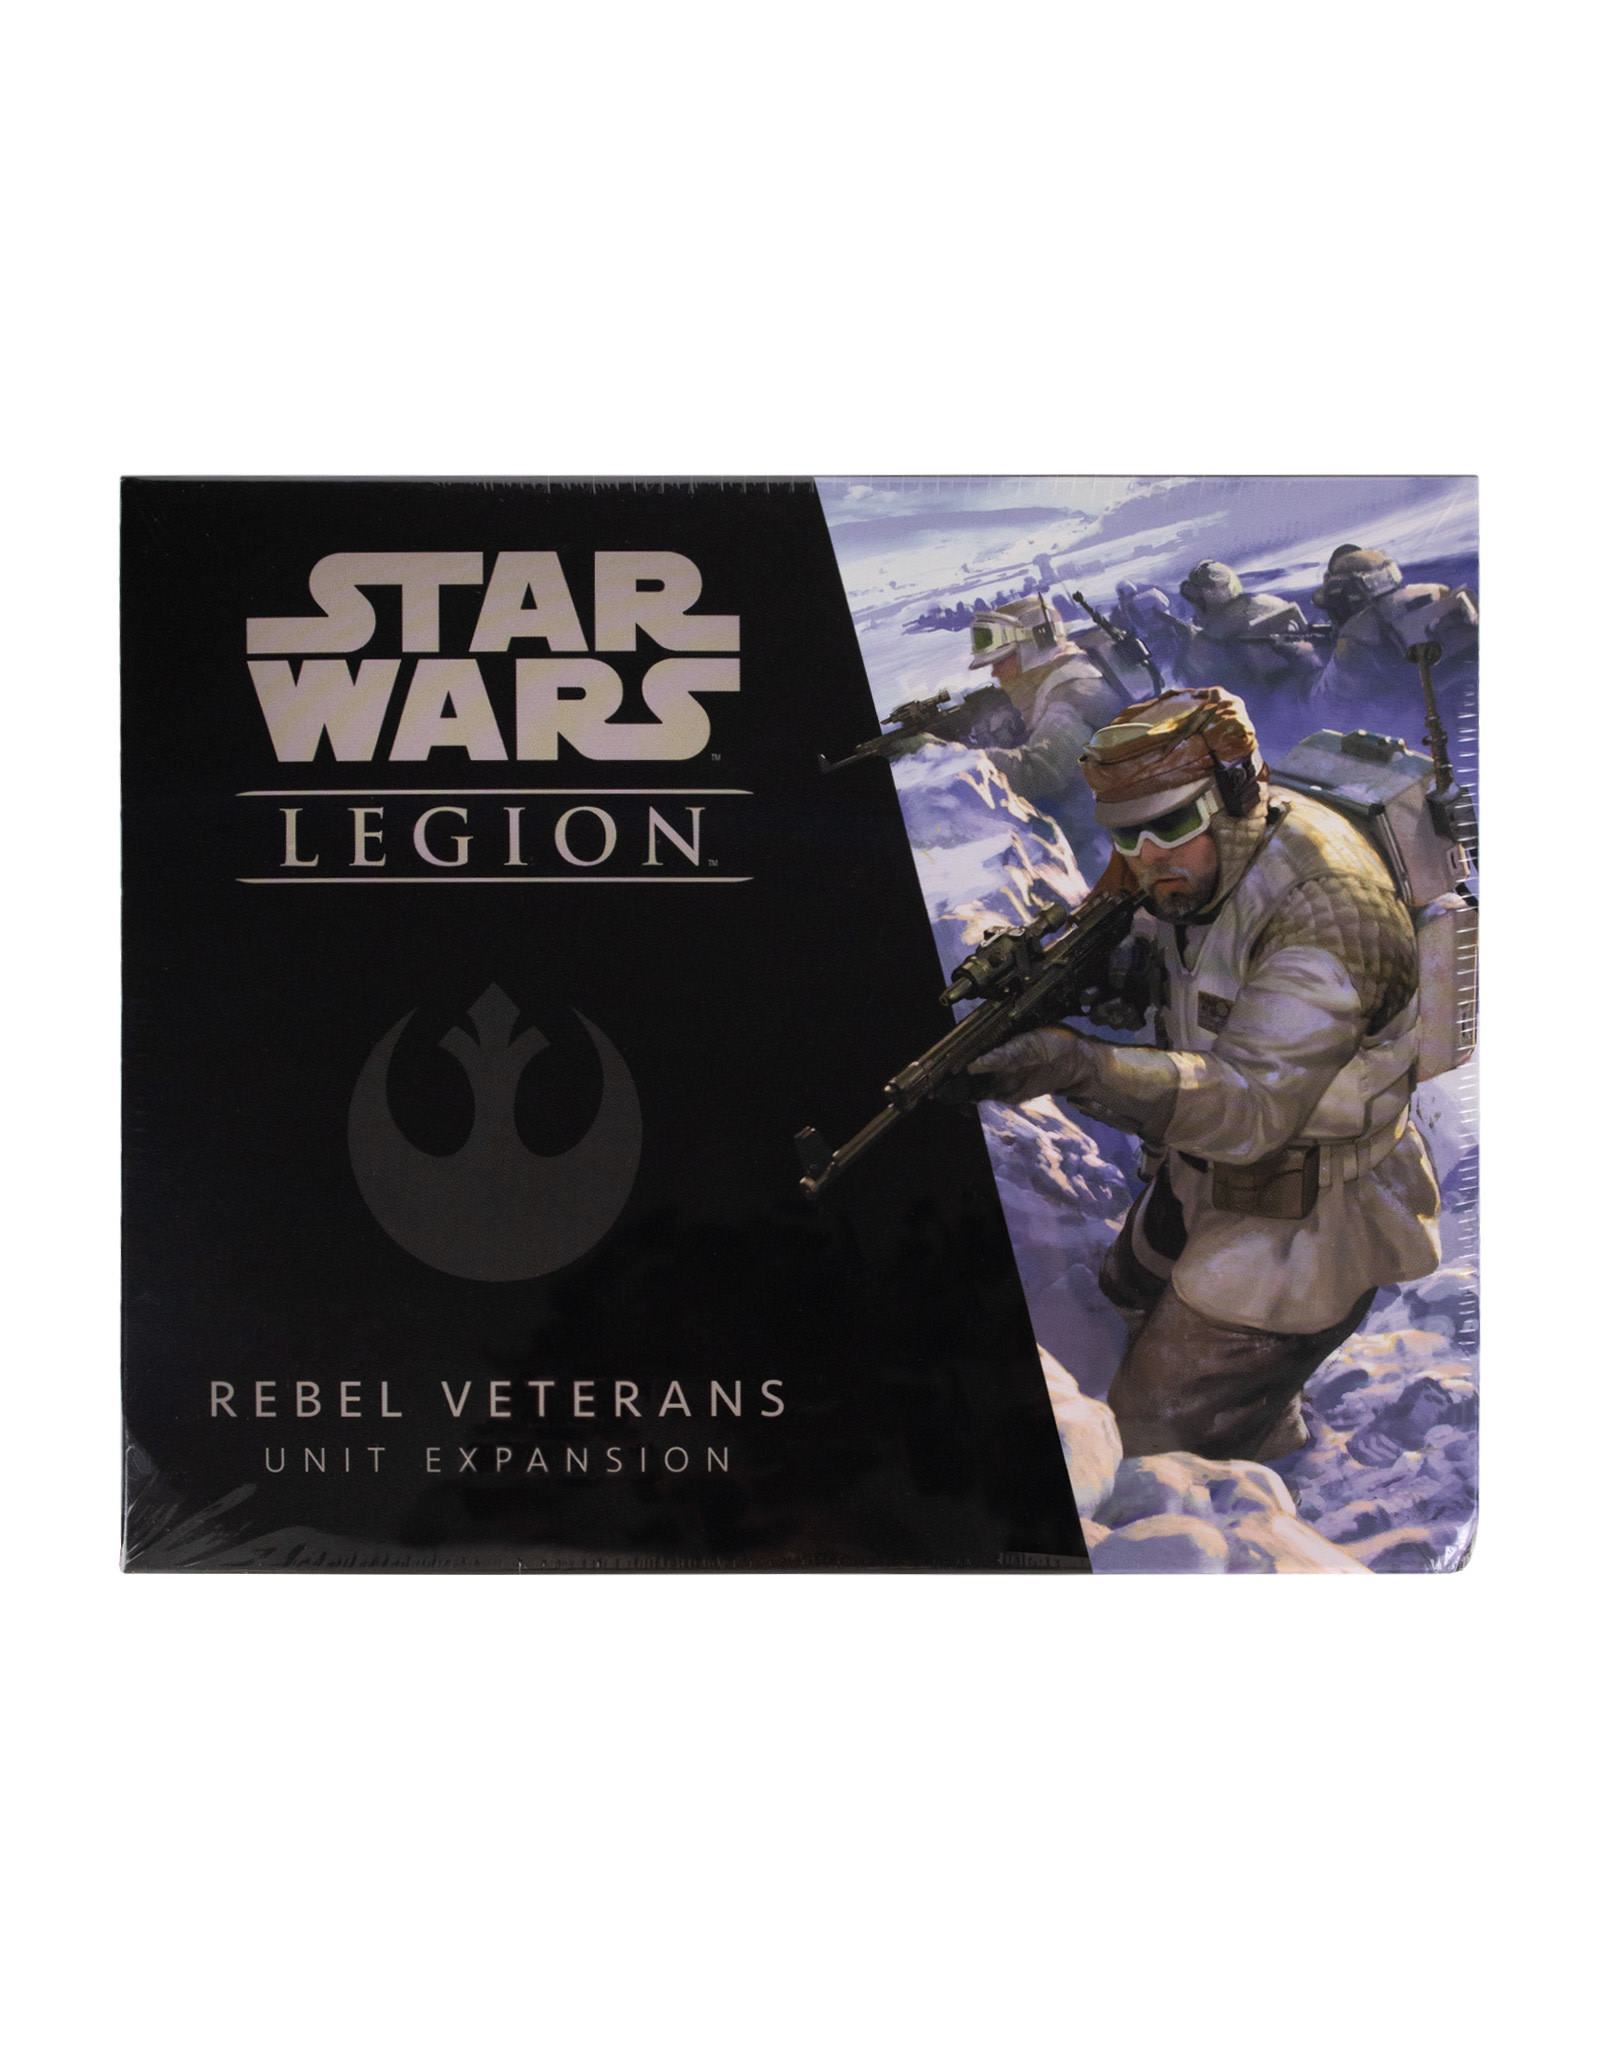 STAR WARS LEGION Star Wars Legion Rebel Veterans Unit Expansion